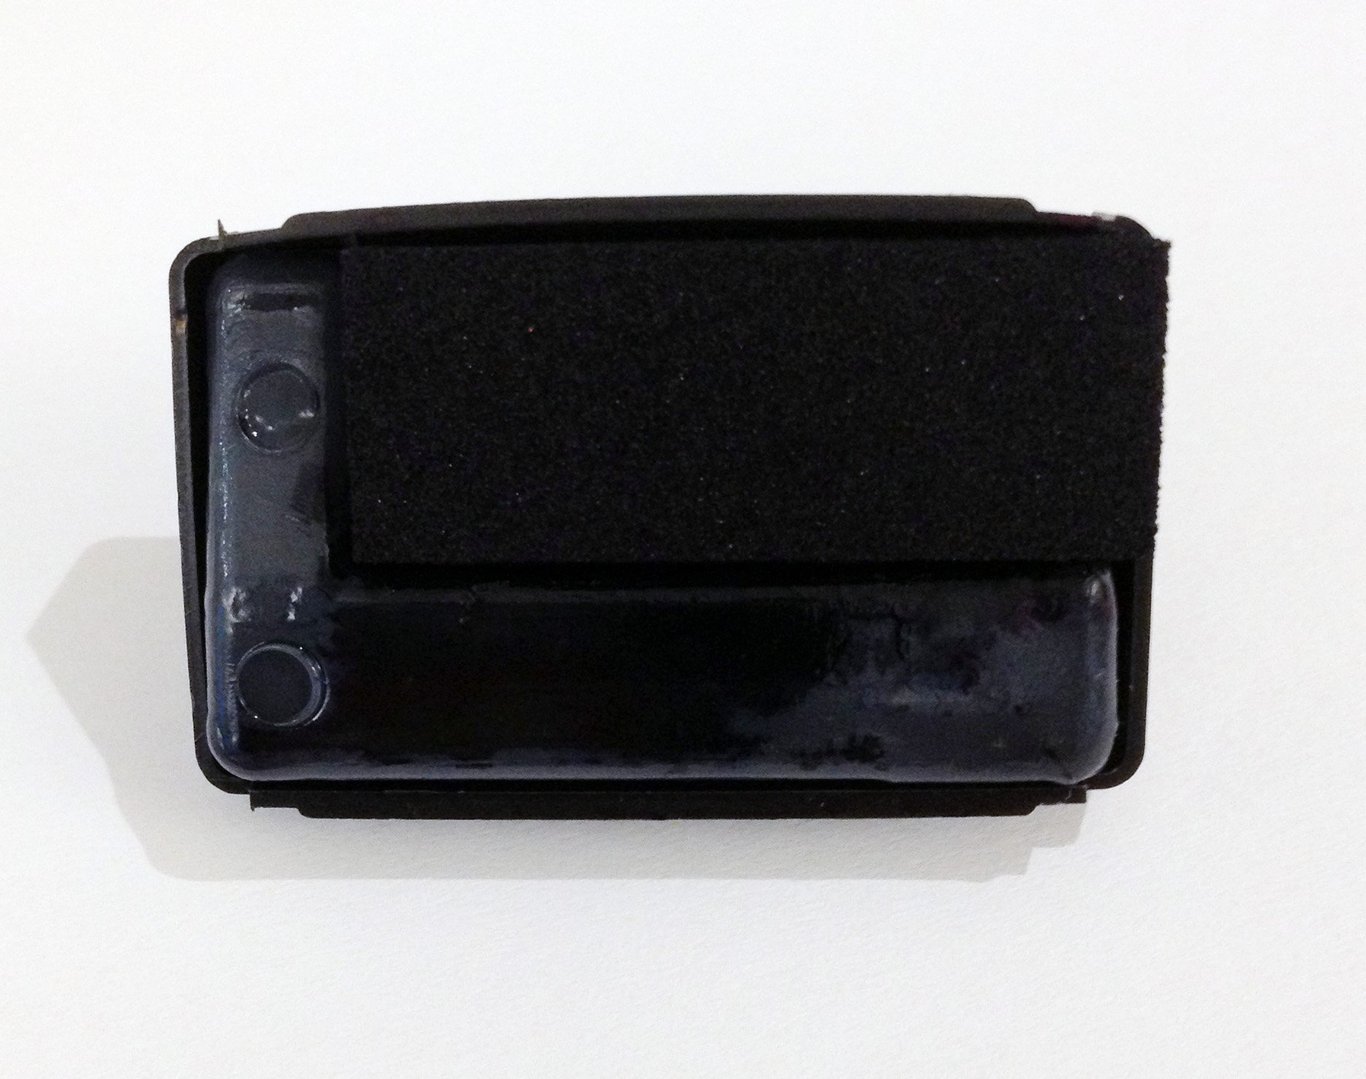 Dynkassett Reiner Colorbox 1 svart